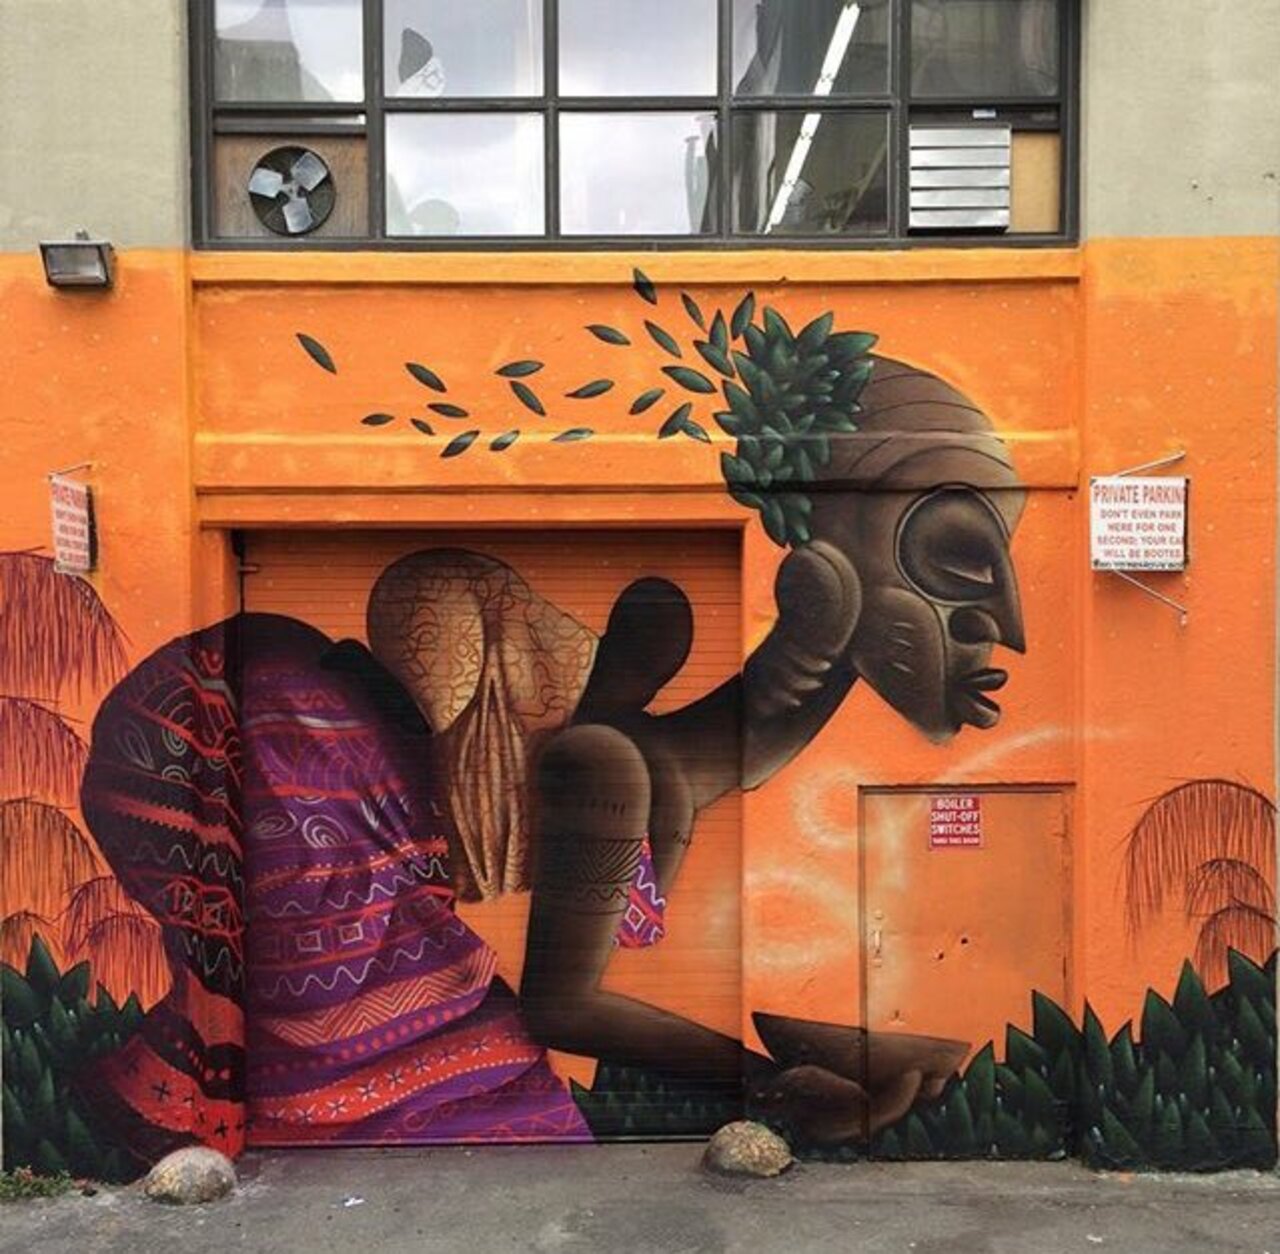 RT @kumarmangla: New Street Art by Alexandre Keto in NYC 

#art #graffiti #mural #streetart https://t.co/qcrbG3bUPM